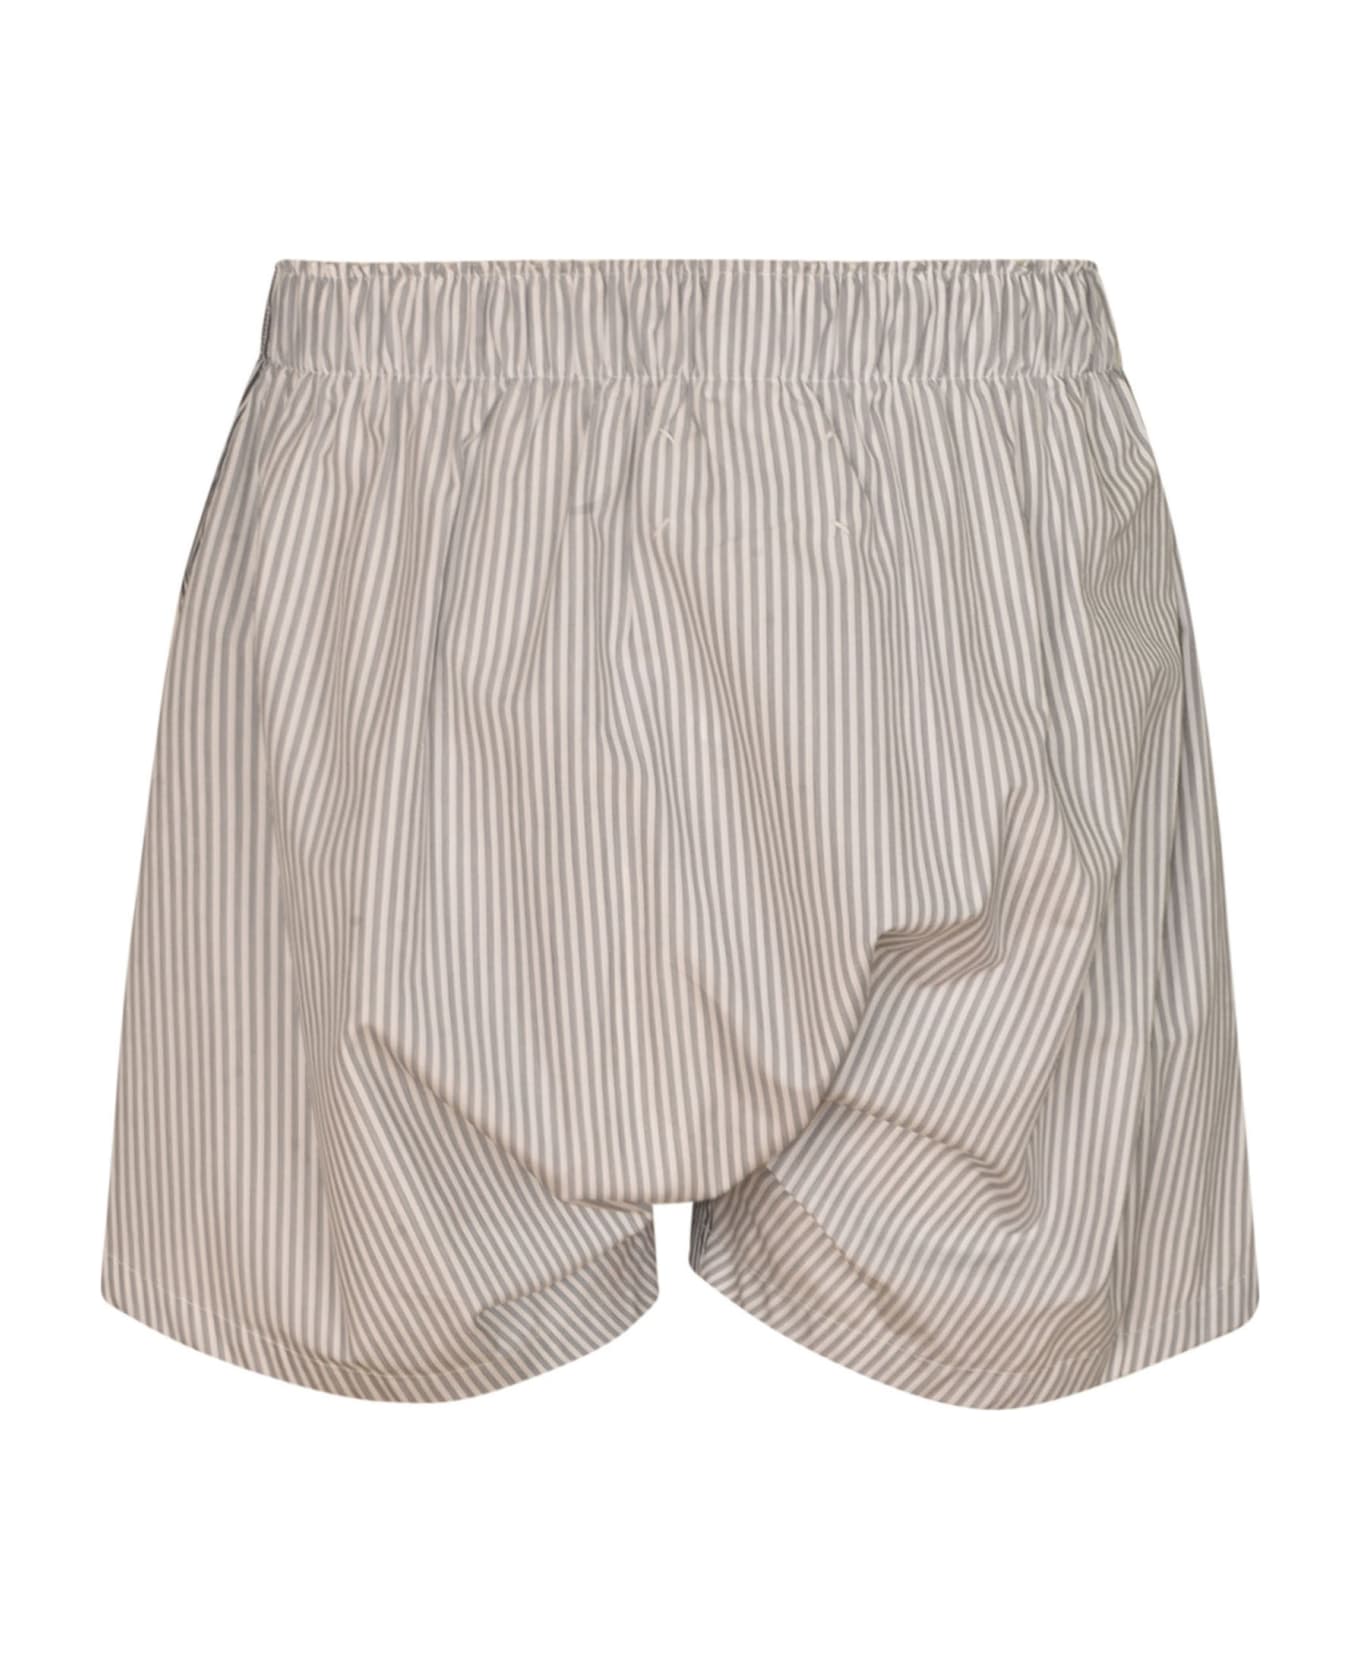 Maison Margiela Stripe Shorts - Black/White